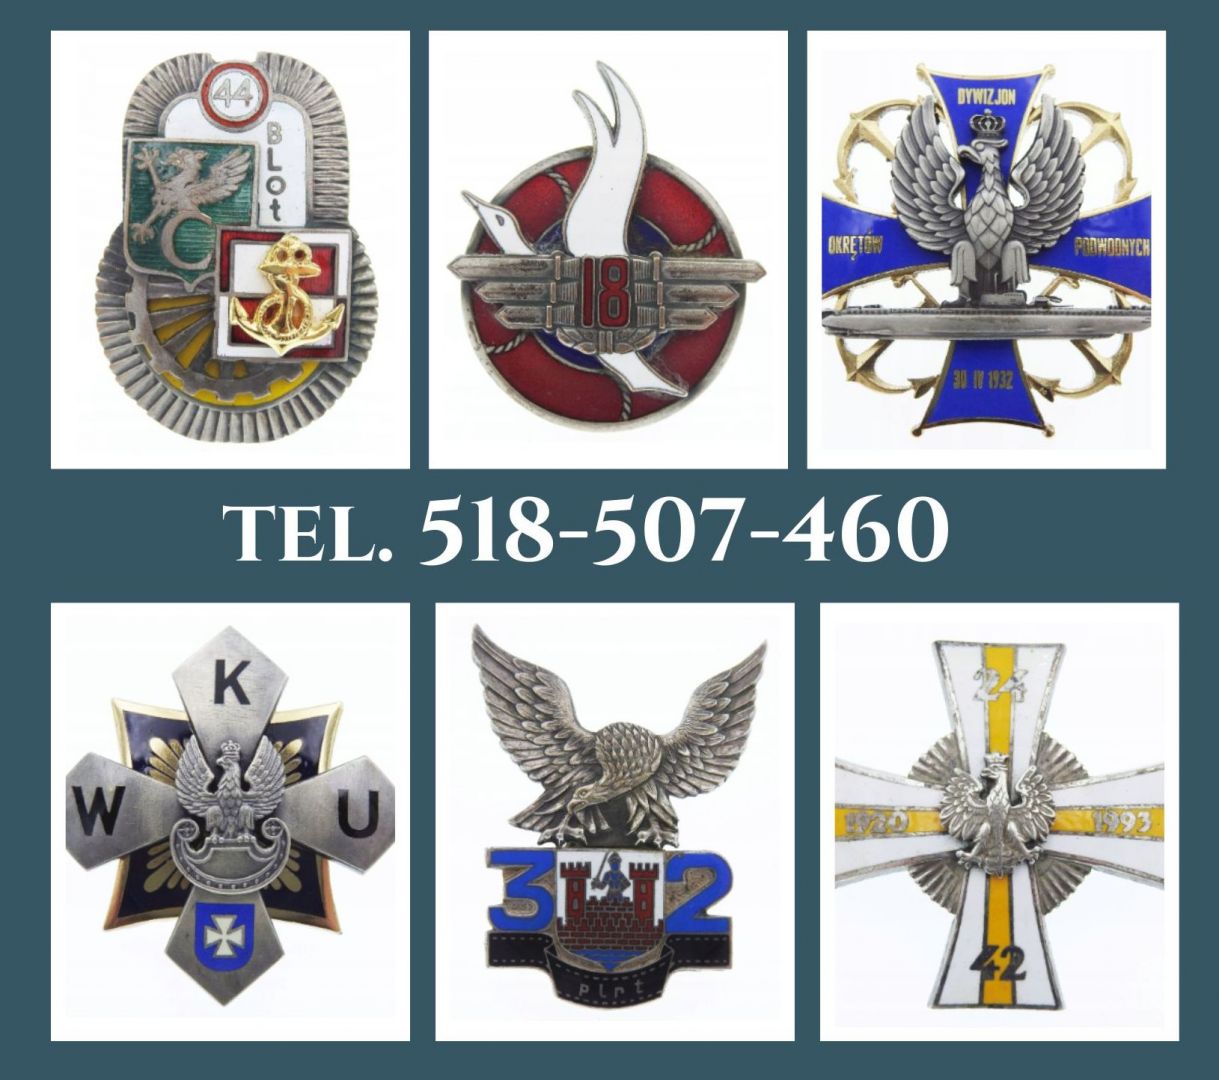 Kupię wojskowe odznaki pamiątkowe tel. 518- 507-460 Wrocław - Zdjęcie 1